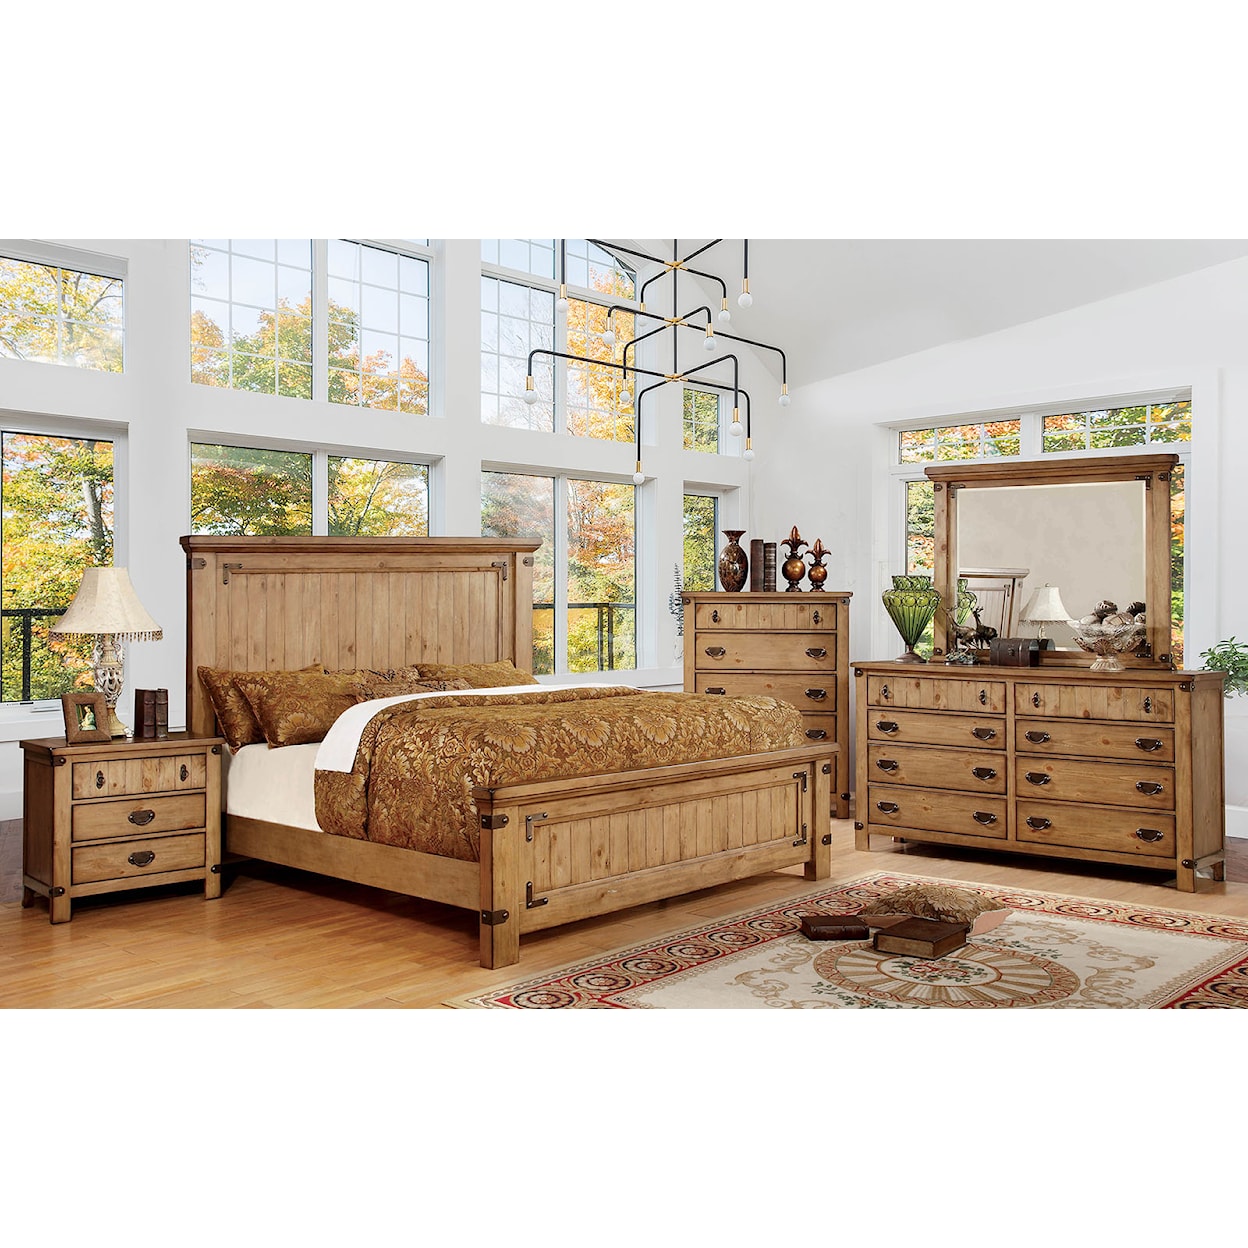 Furniture of America Carlsbad 5-Piece Queen Bedroom Set with 2 Nightstands